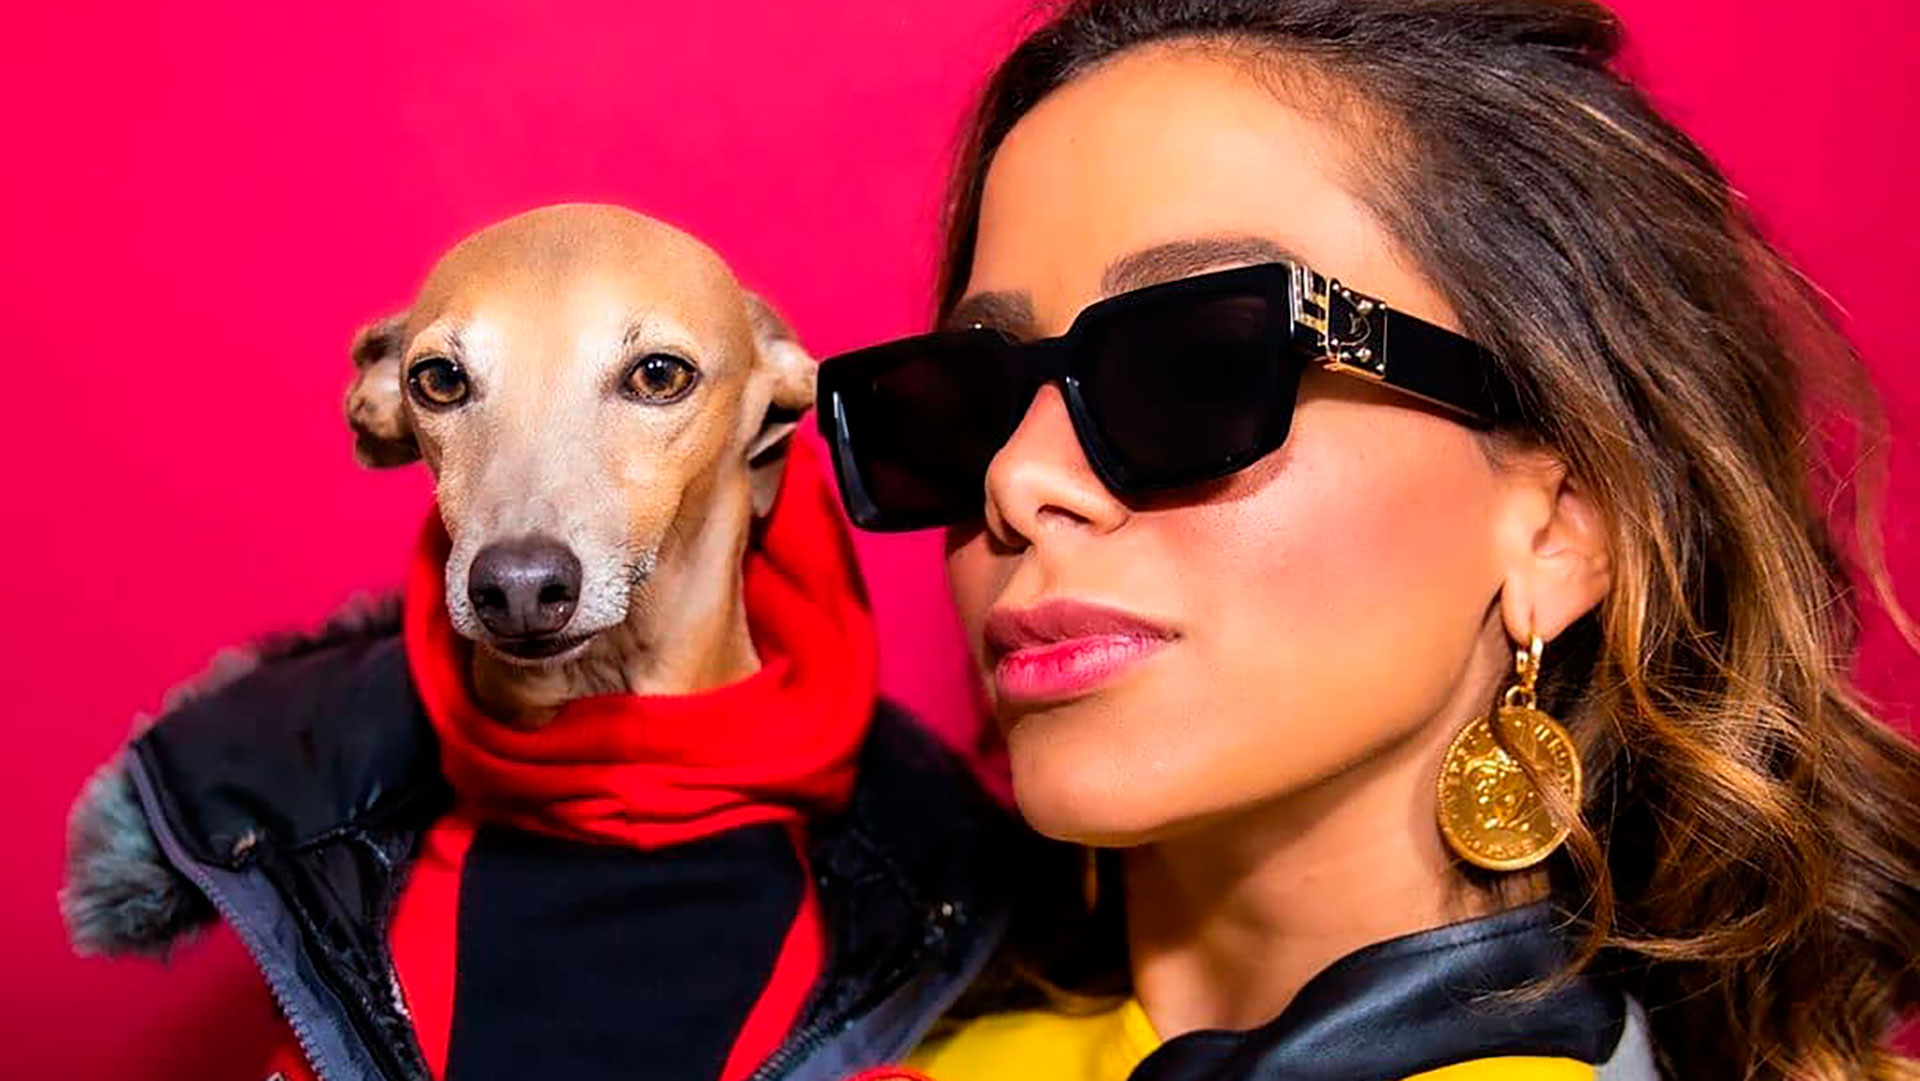 Anitta brinca sobre relações com cachorros e gera polêmica na internet: “Tr*nso com tudo” - Metropolitana FM